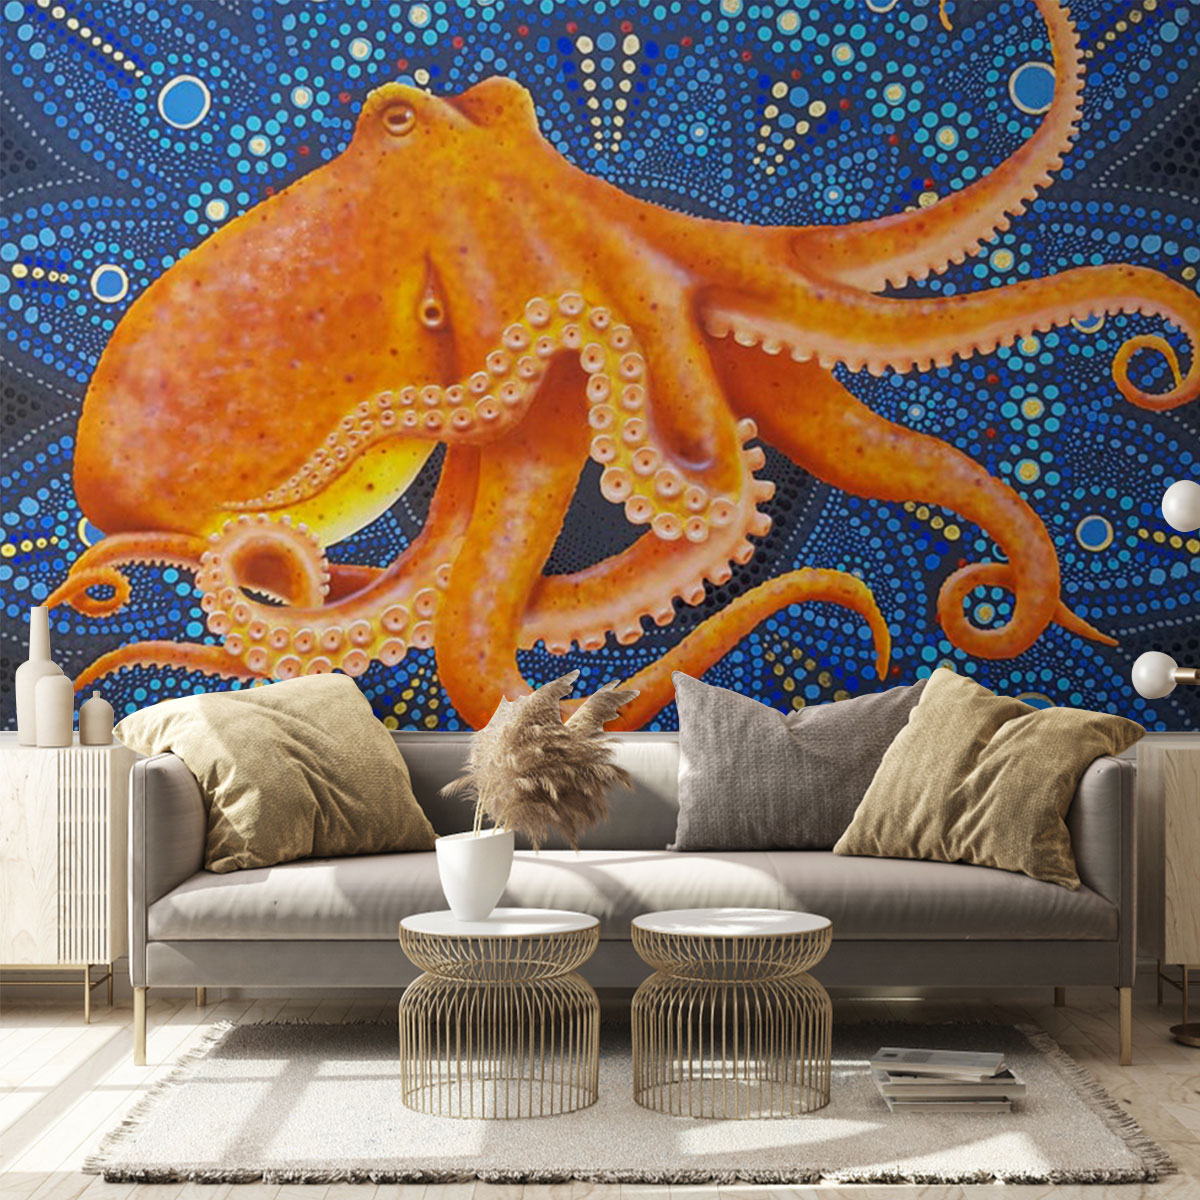 Mandala Orange Octopus Wall Mural_2_1